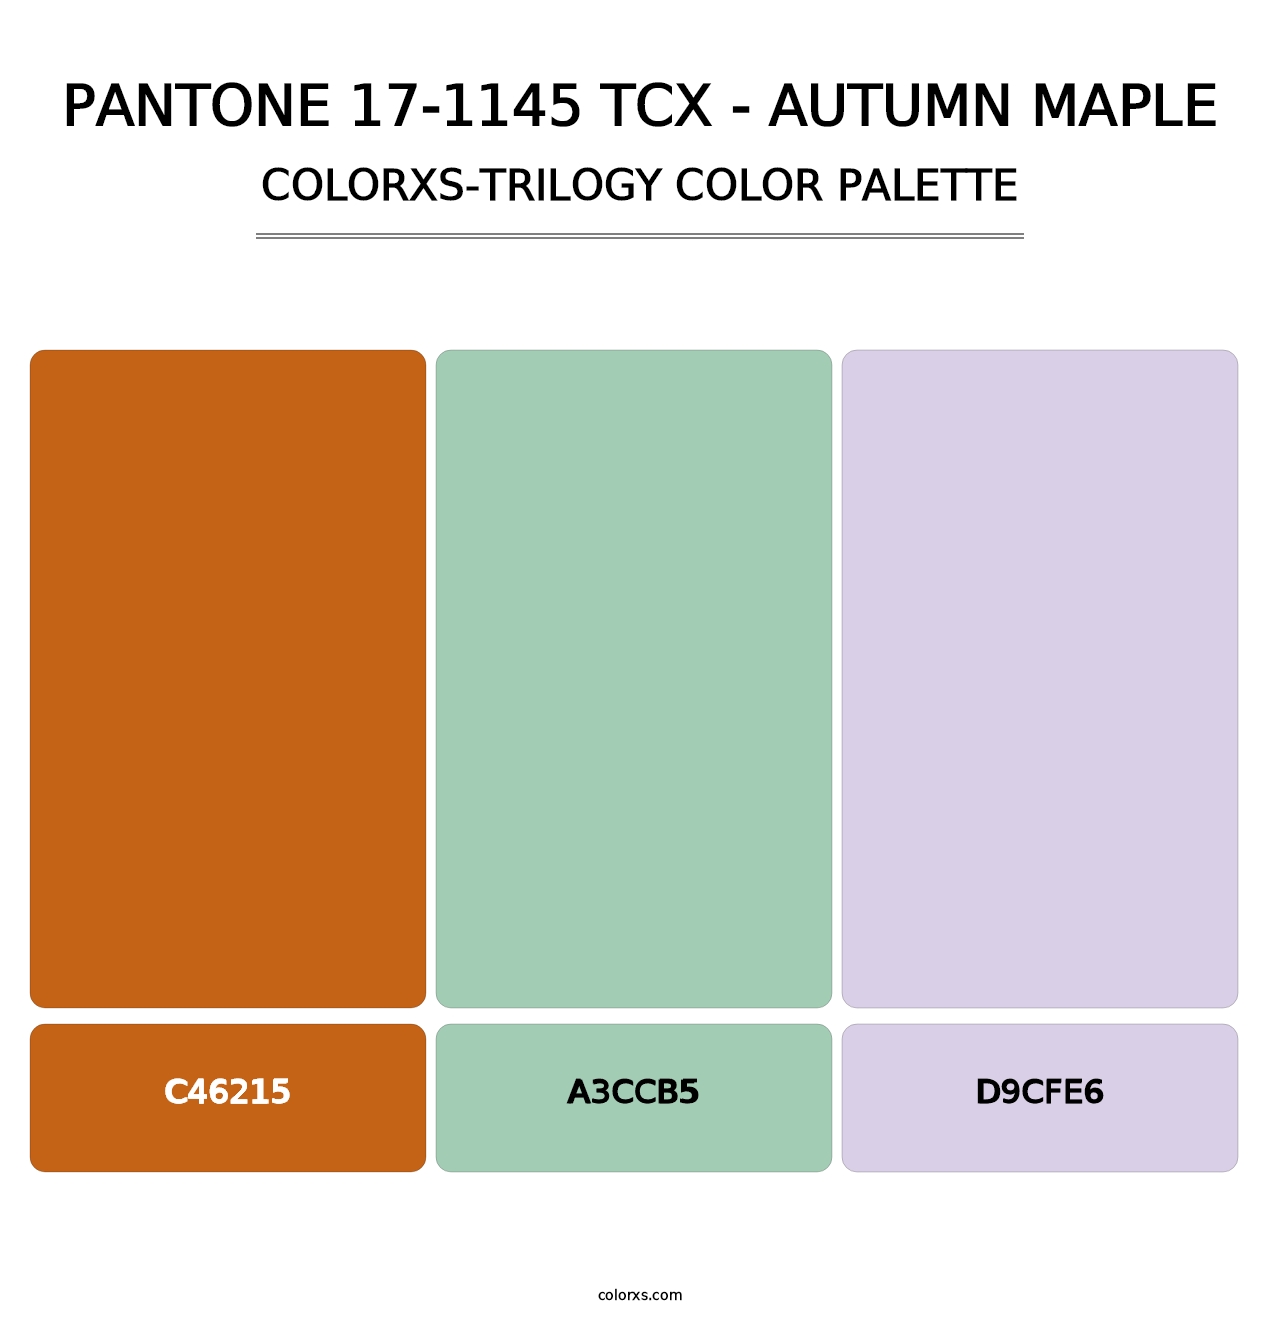 PANTONE 17-1145 TCX - Autumn Maple - Colorxs Trilogy Palette